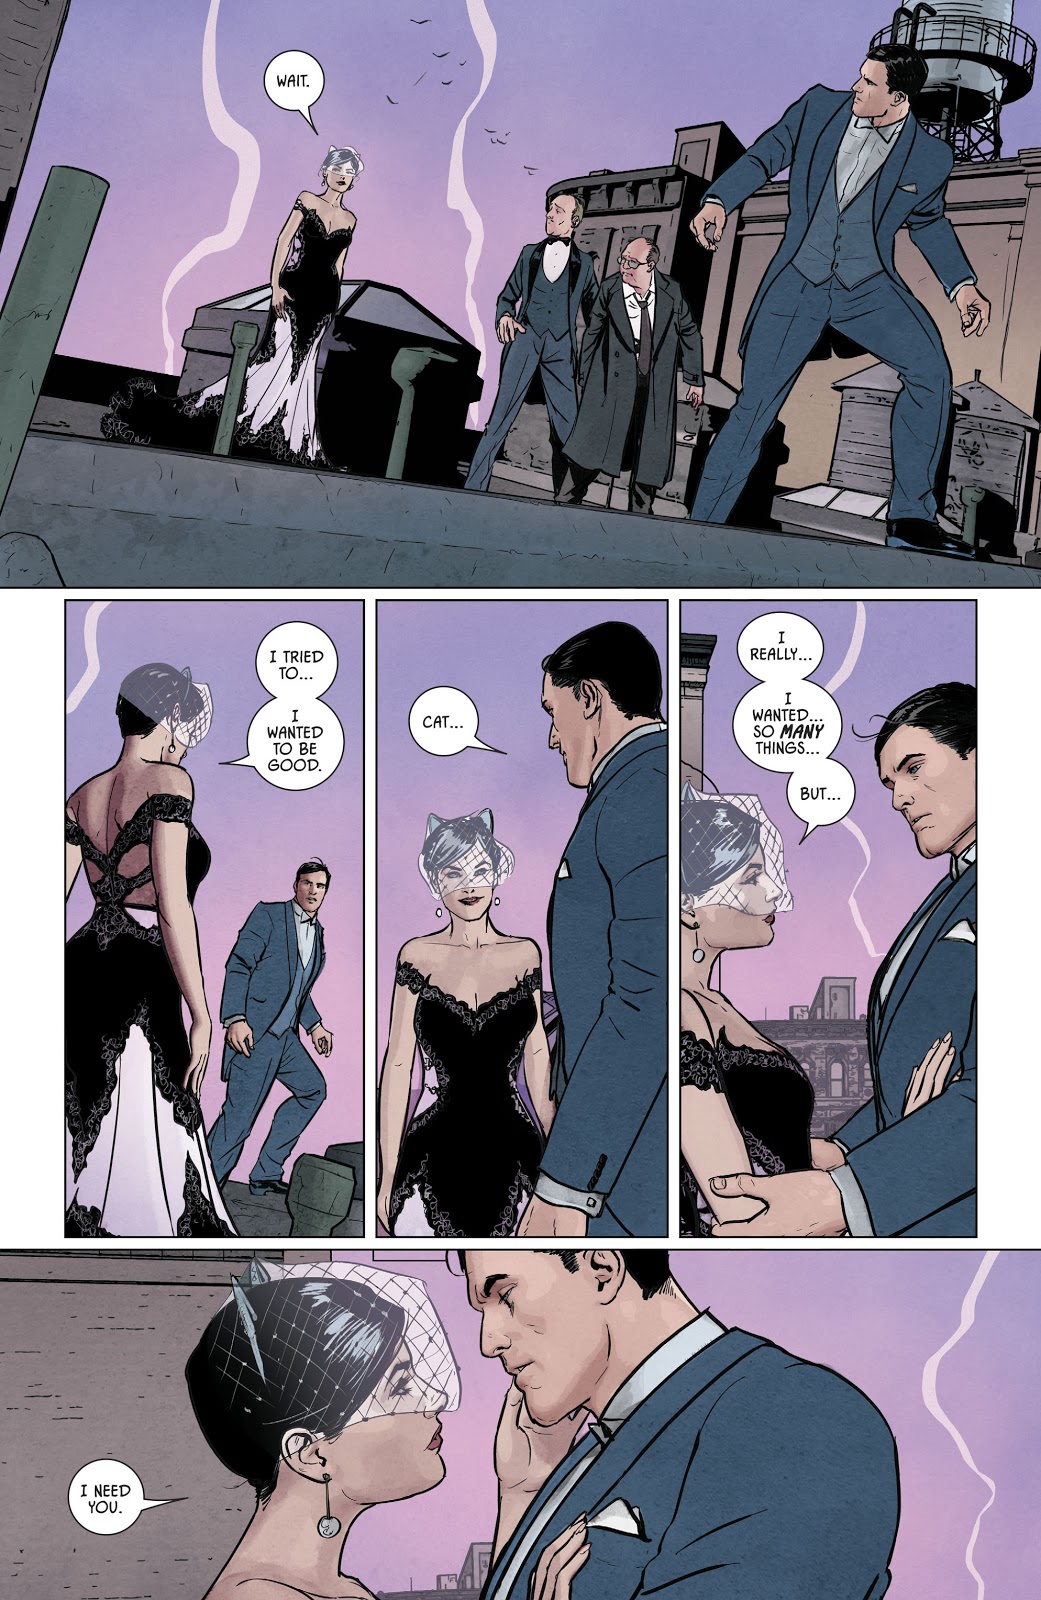 Batman And Catwoman (Batman Vol. 3 #63)